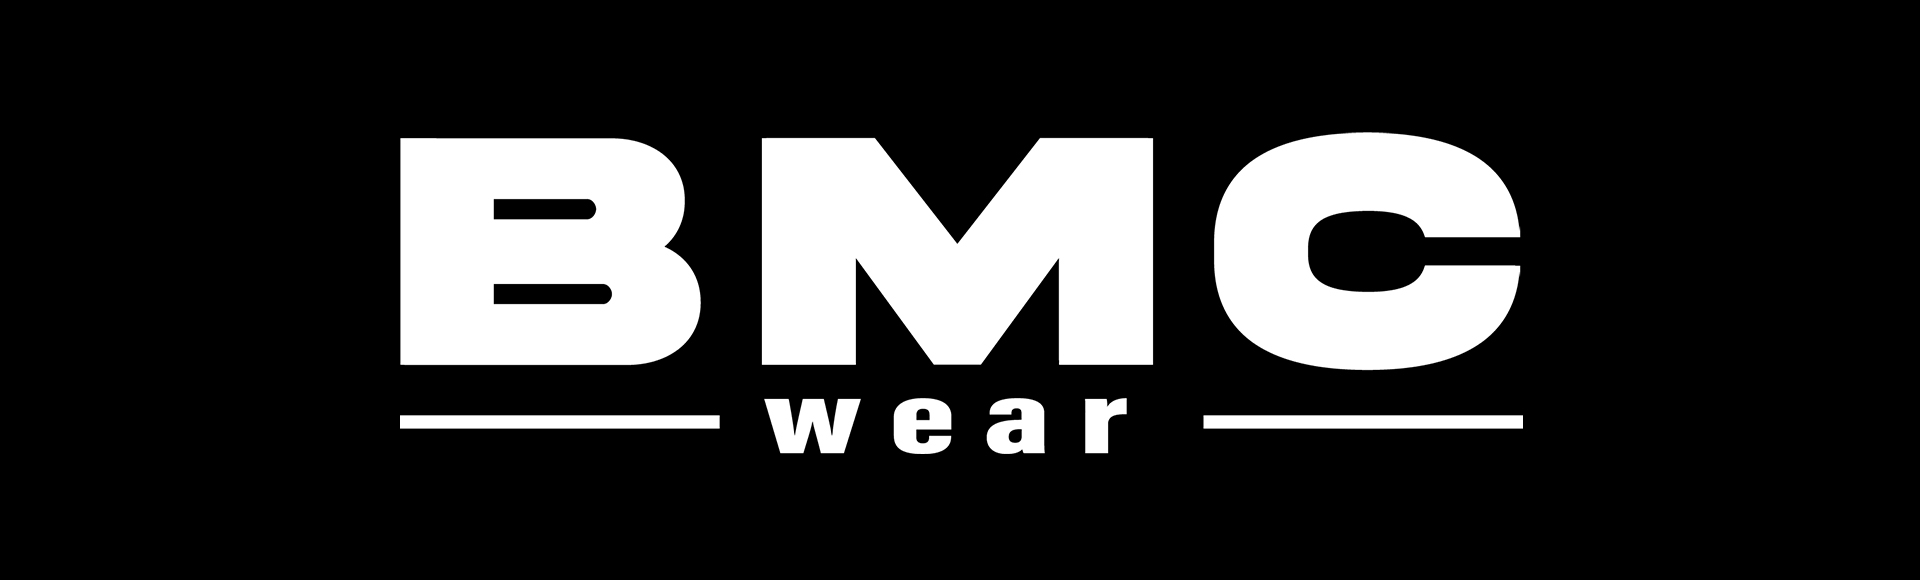 www.bmcwear.com